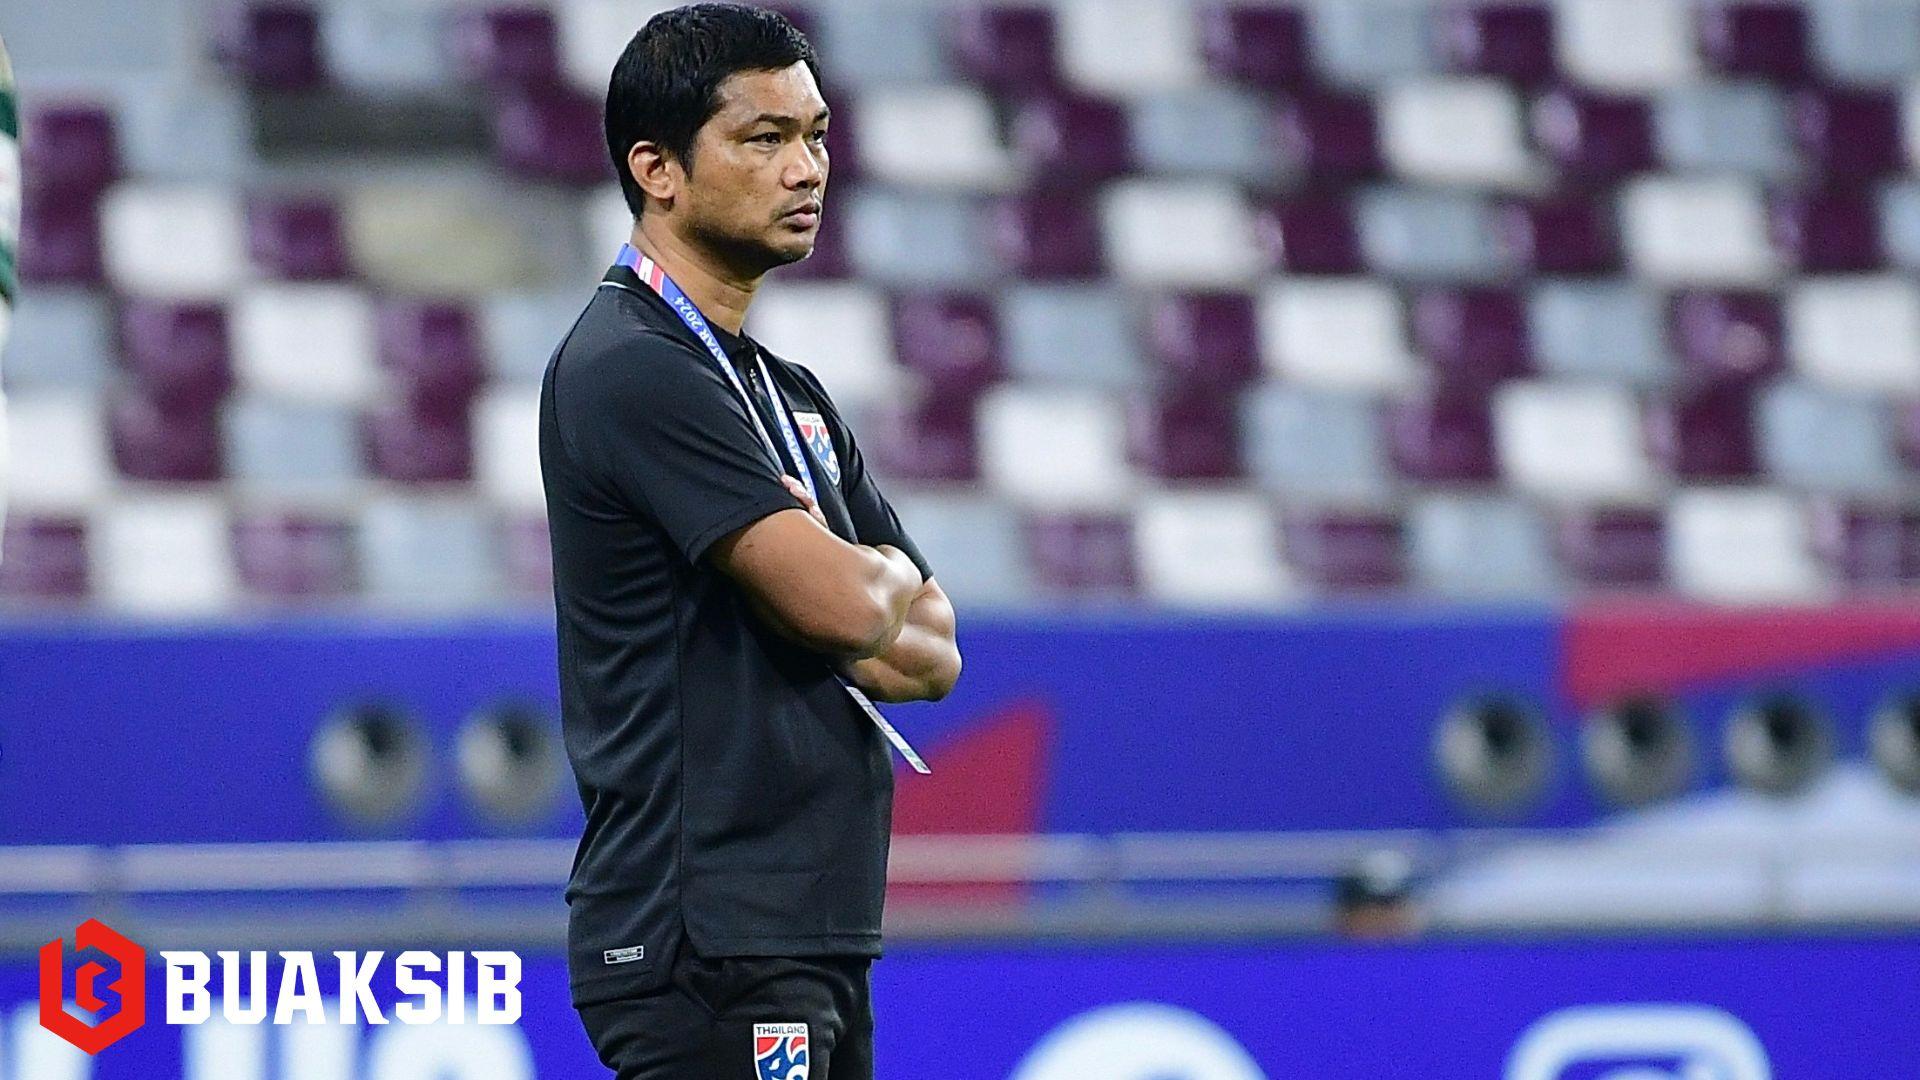 "อิสสระ ศรีทะโร" รับทีมชาติไทย U23 ต้องแก้ไขผิดพลาดเพื่อกลับมาแข็งแกร่งในเกมหน้า